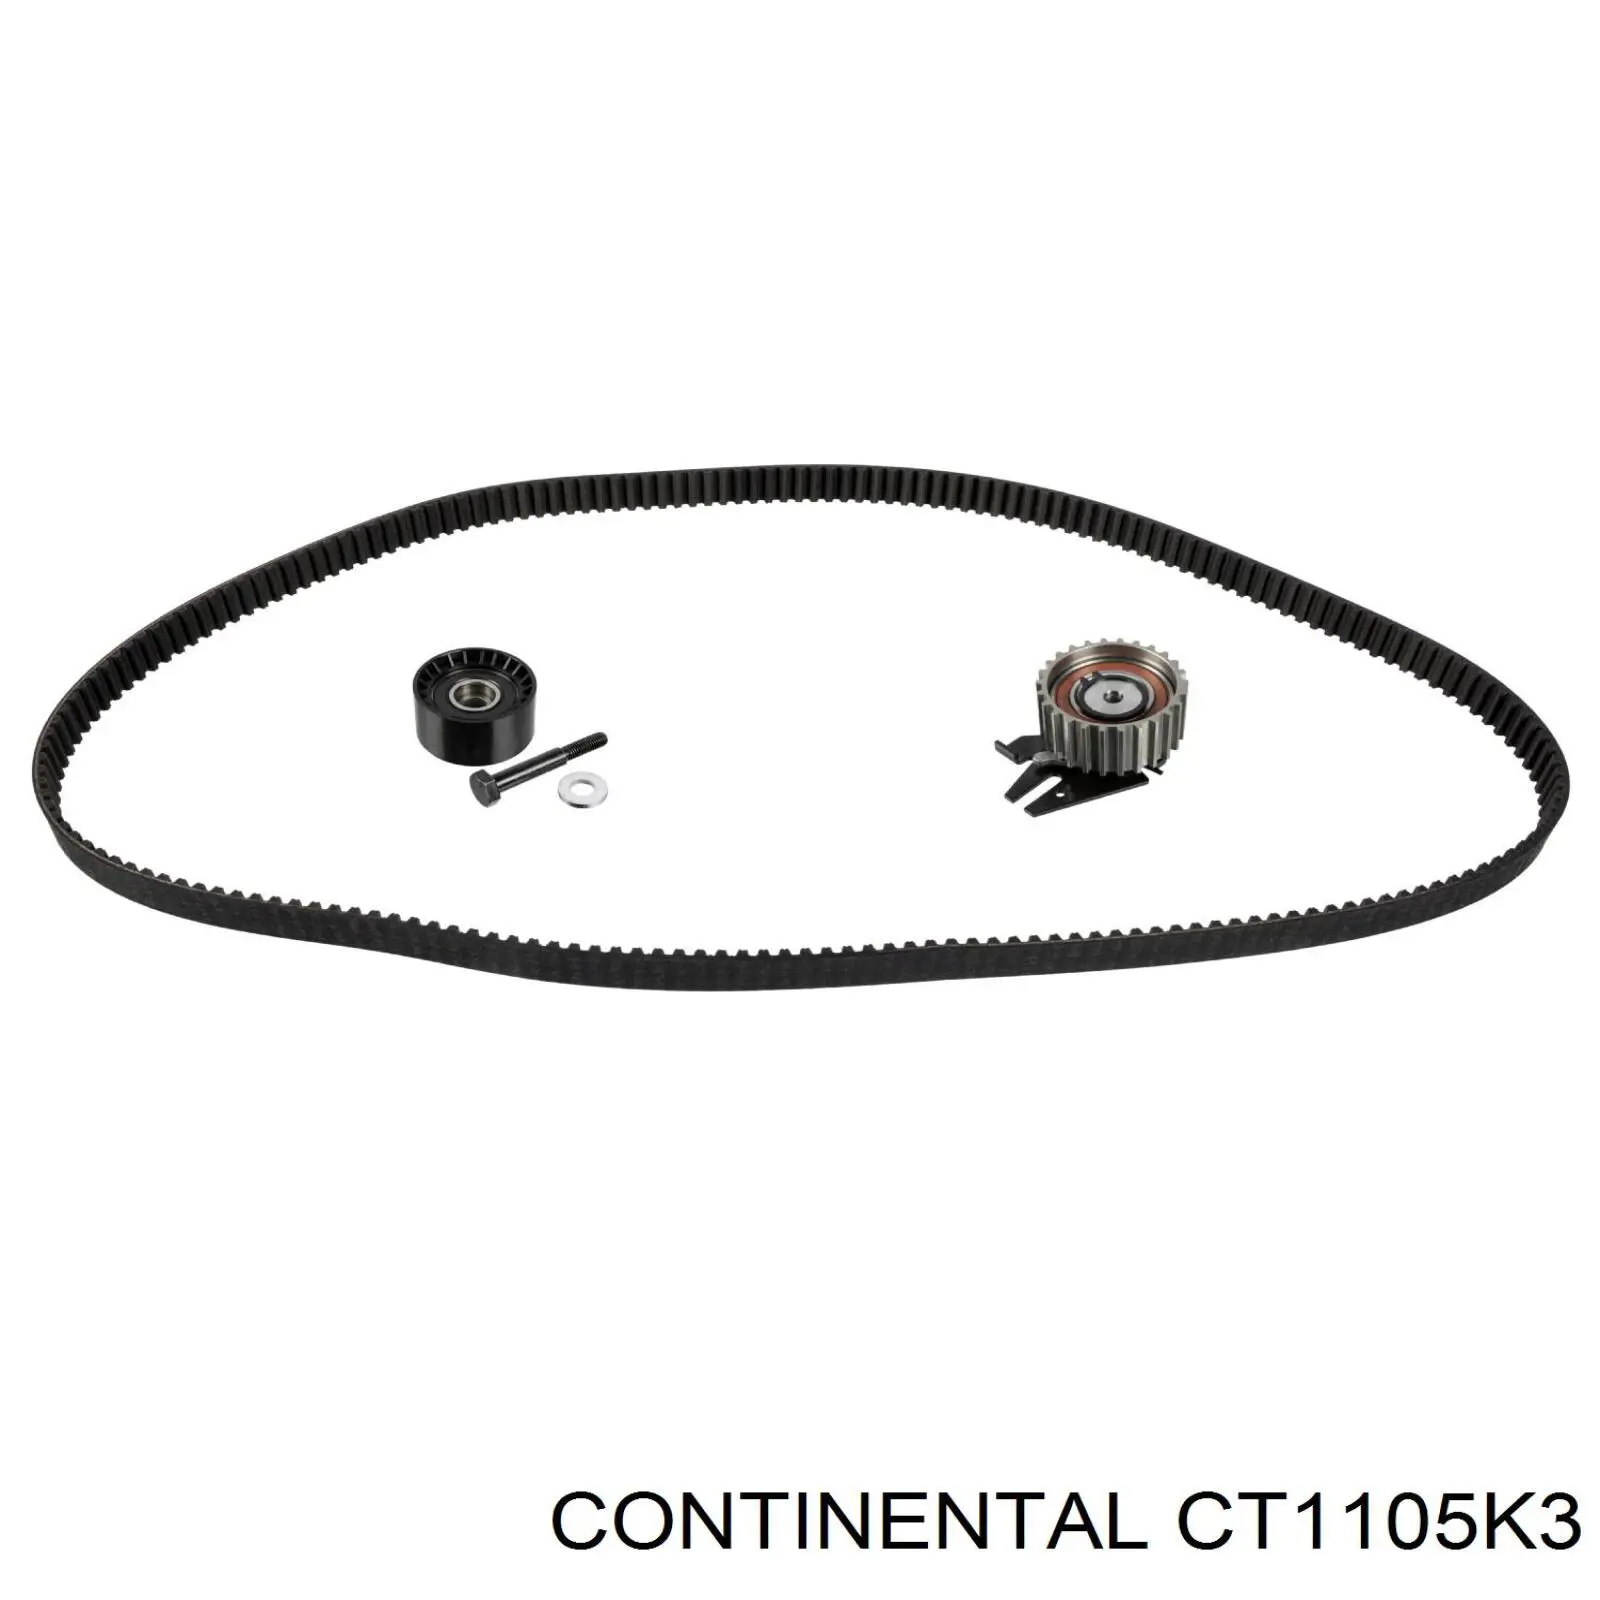 CT1105K3 Continental/Siemens kit de correa de distribución